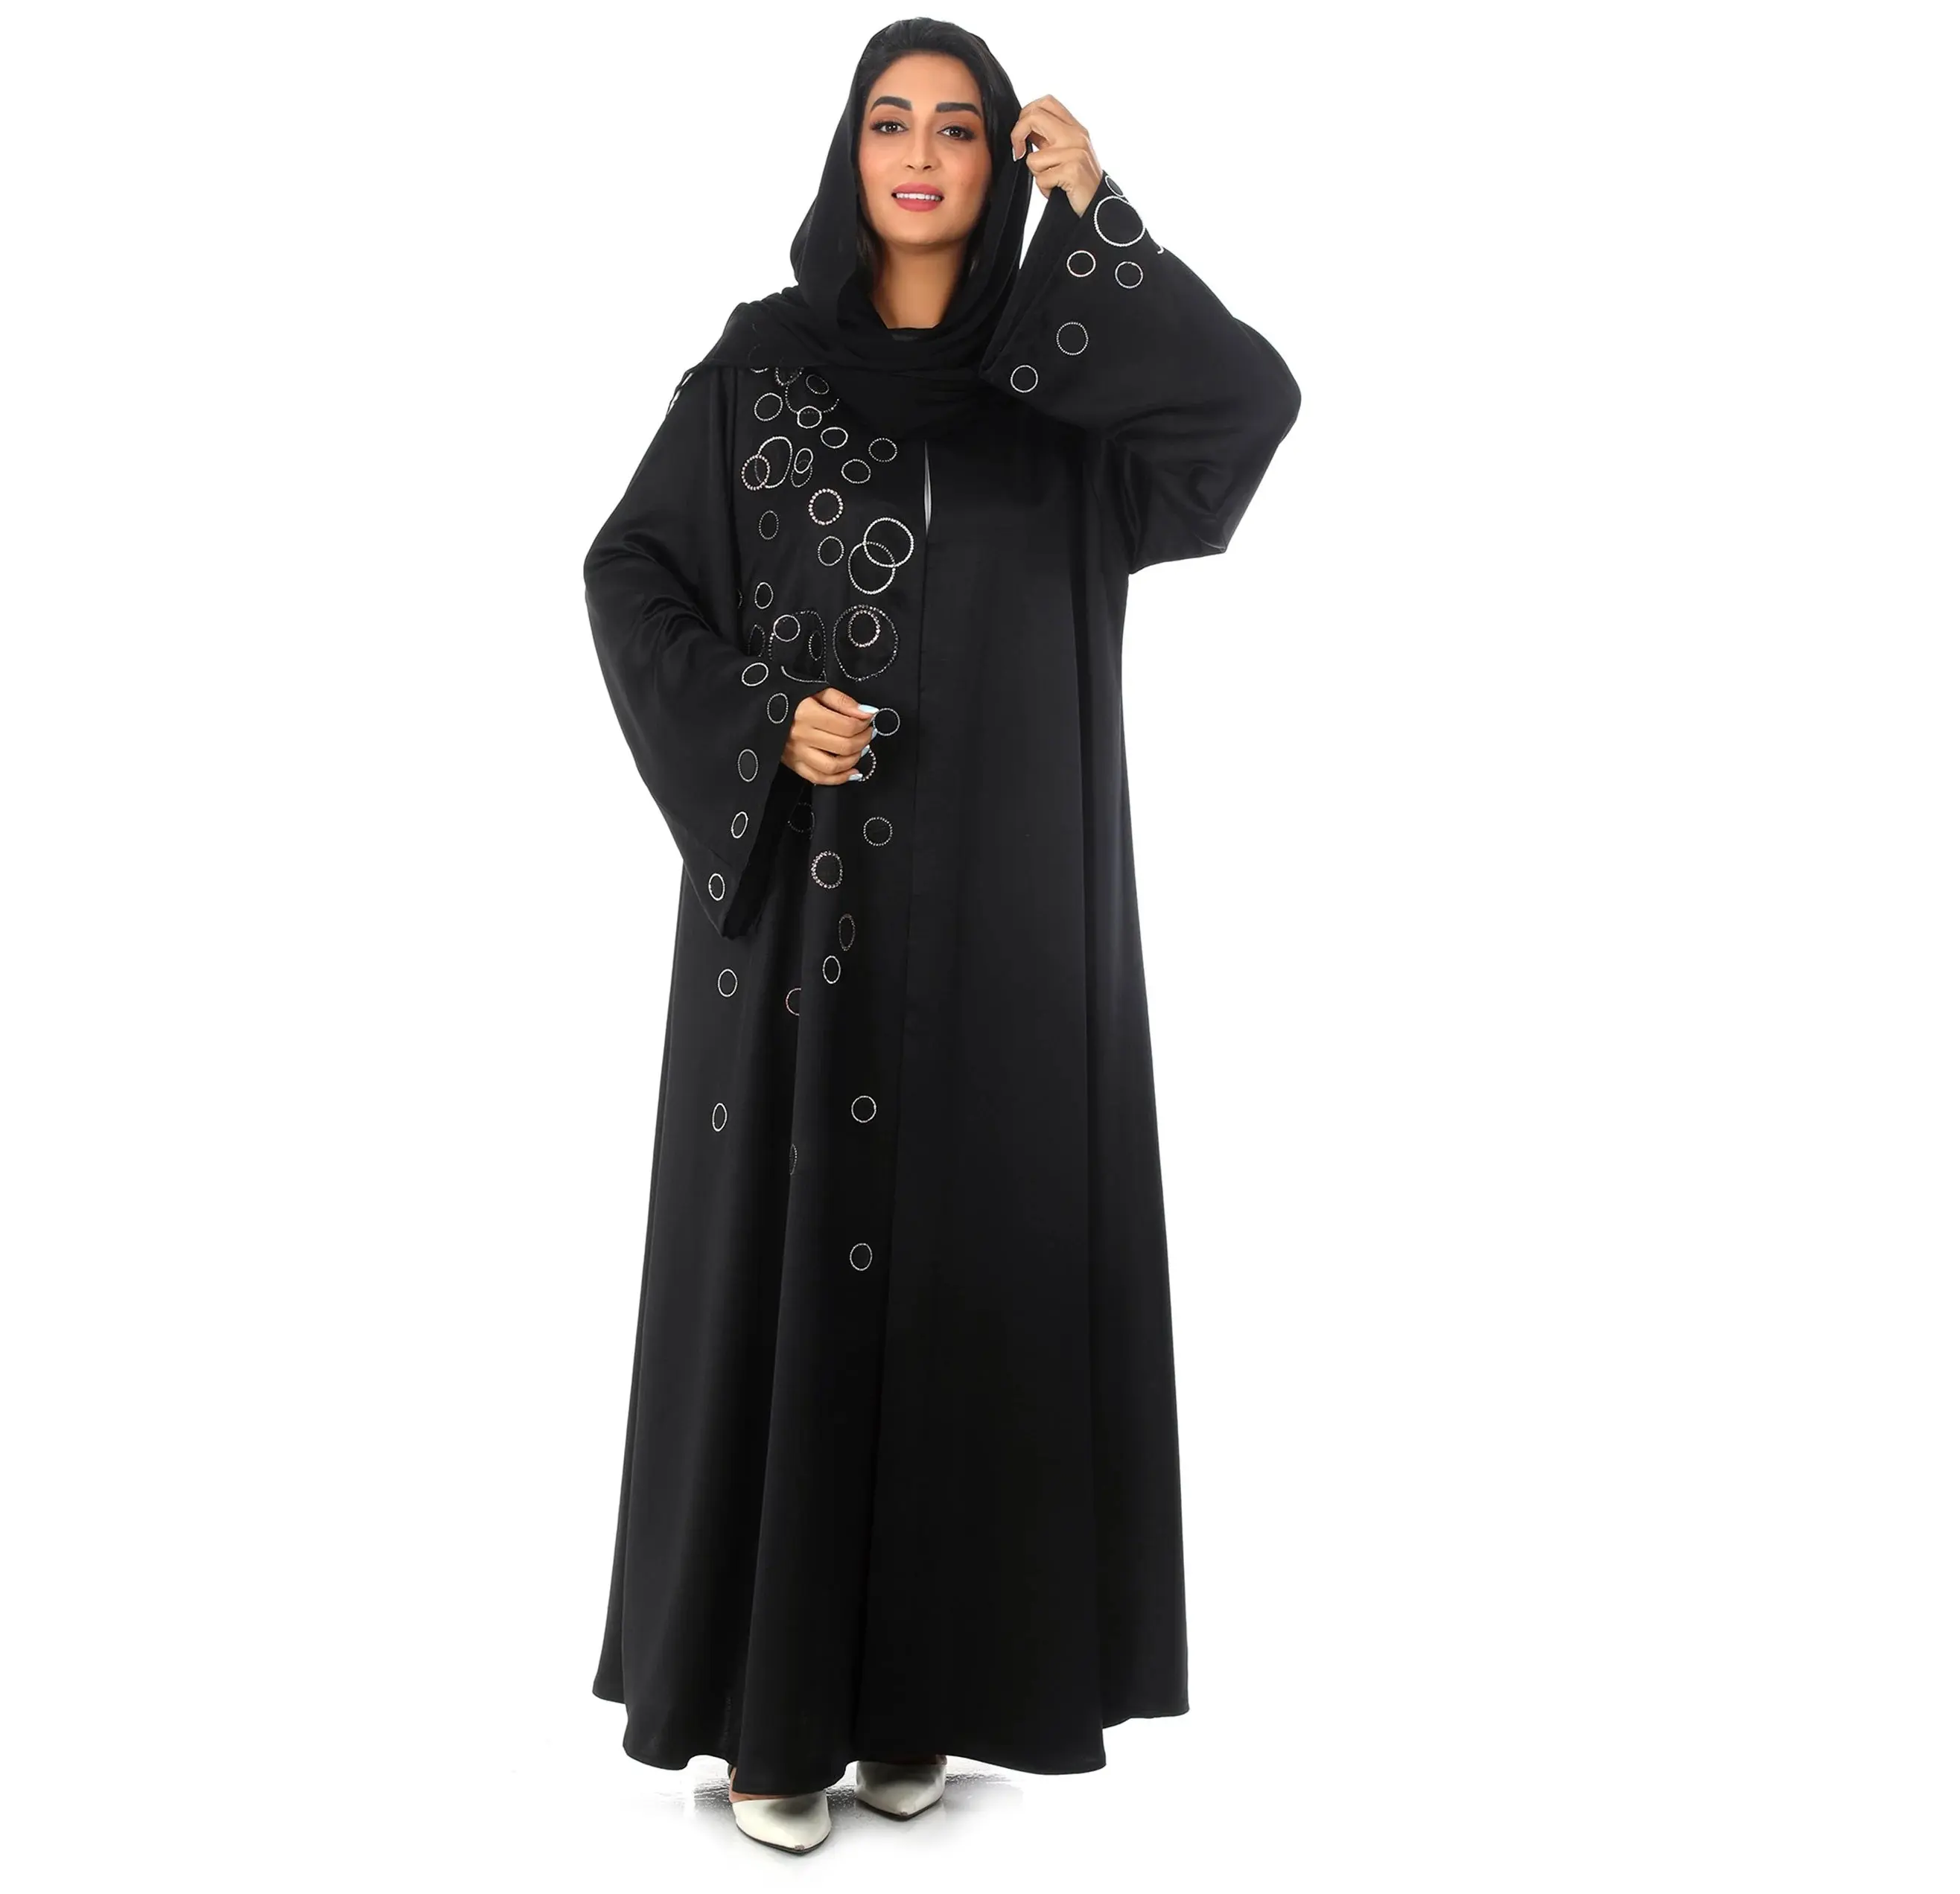 Respirável Cor sólida Frente Fechado bom Tecido Abaya com outras cores disponíveis vestido islâmico abaya kaftan